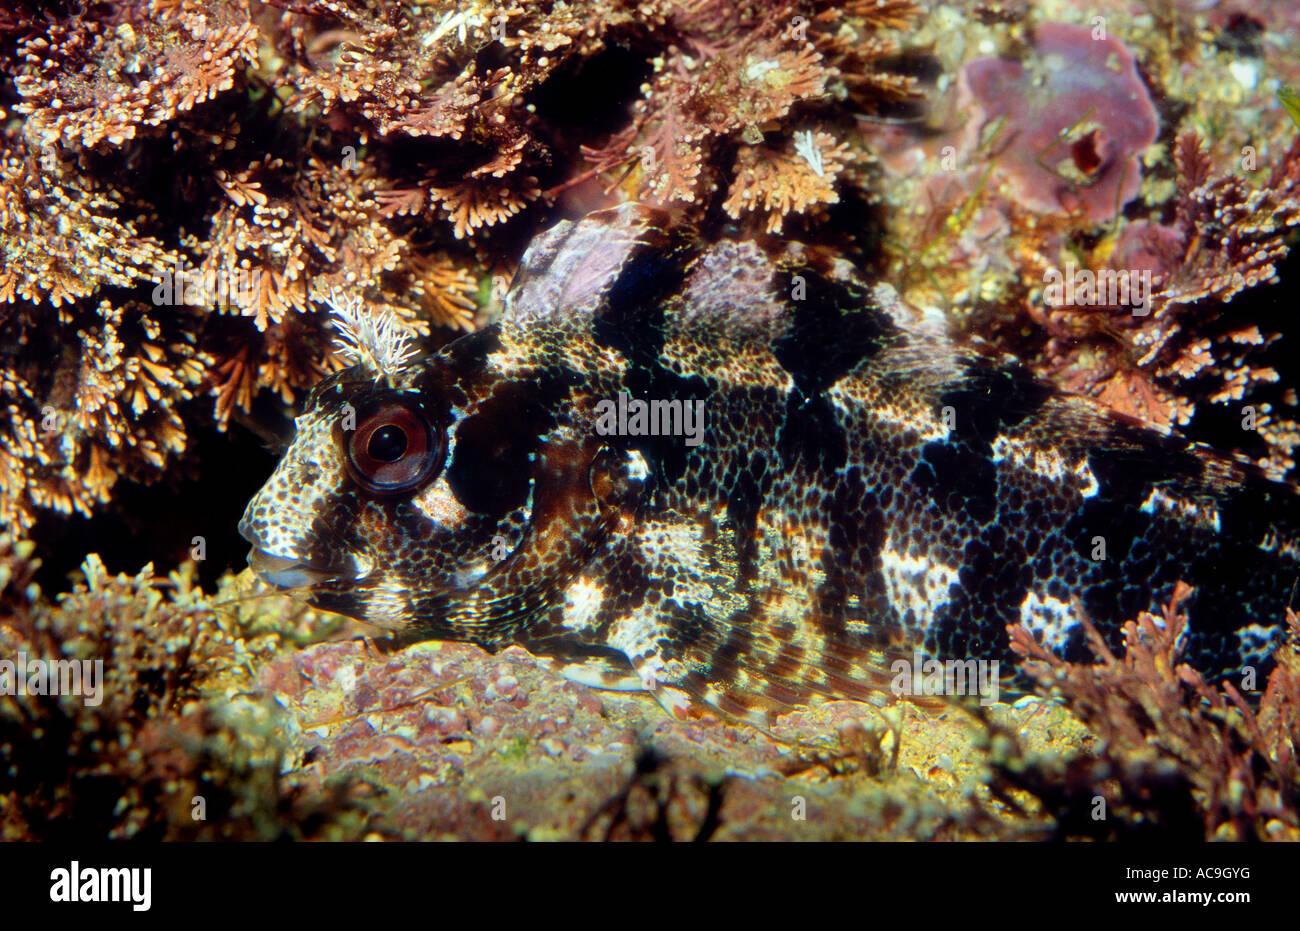 Tompot blenny camouflaged on seabed Blennius gattorugine Mediterranean Stock Photo